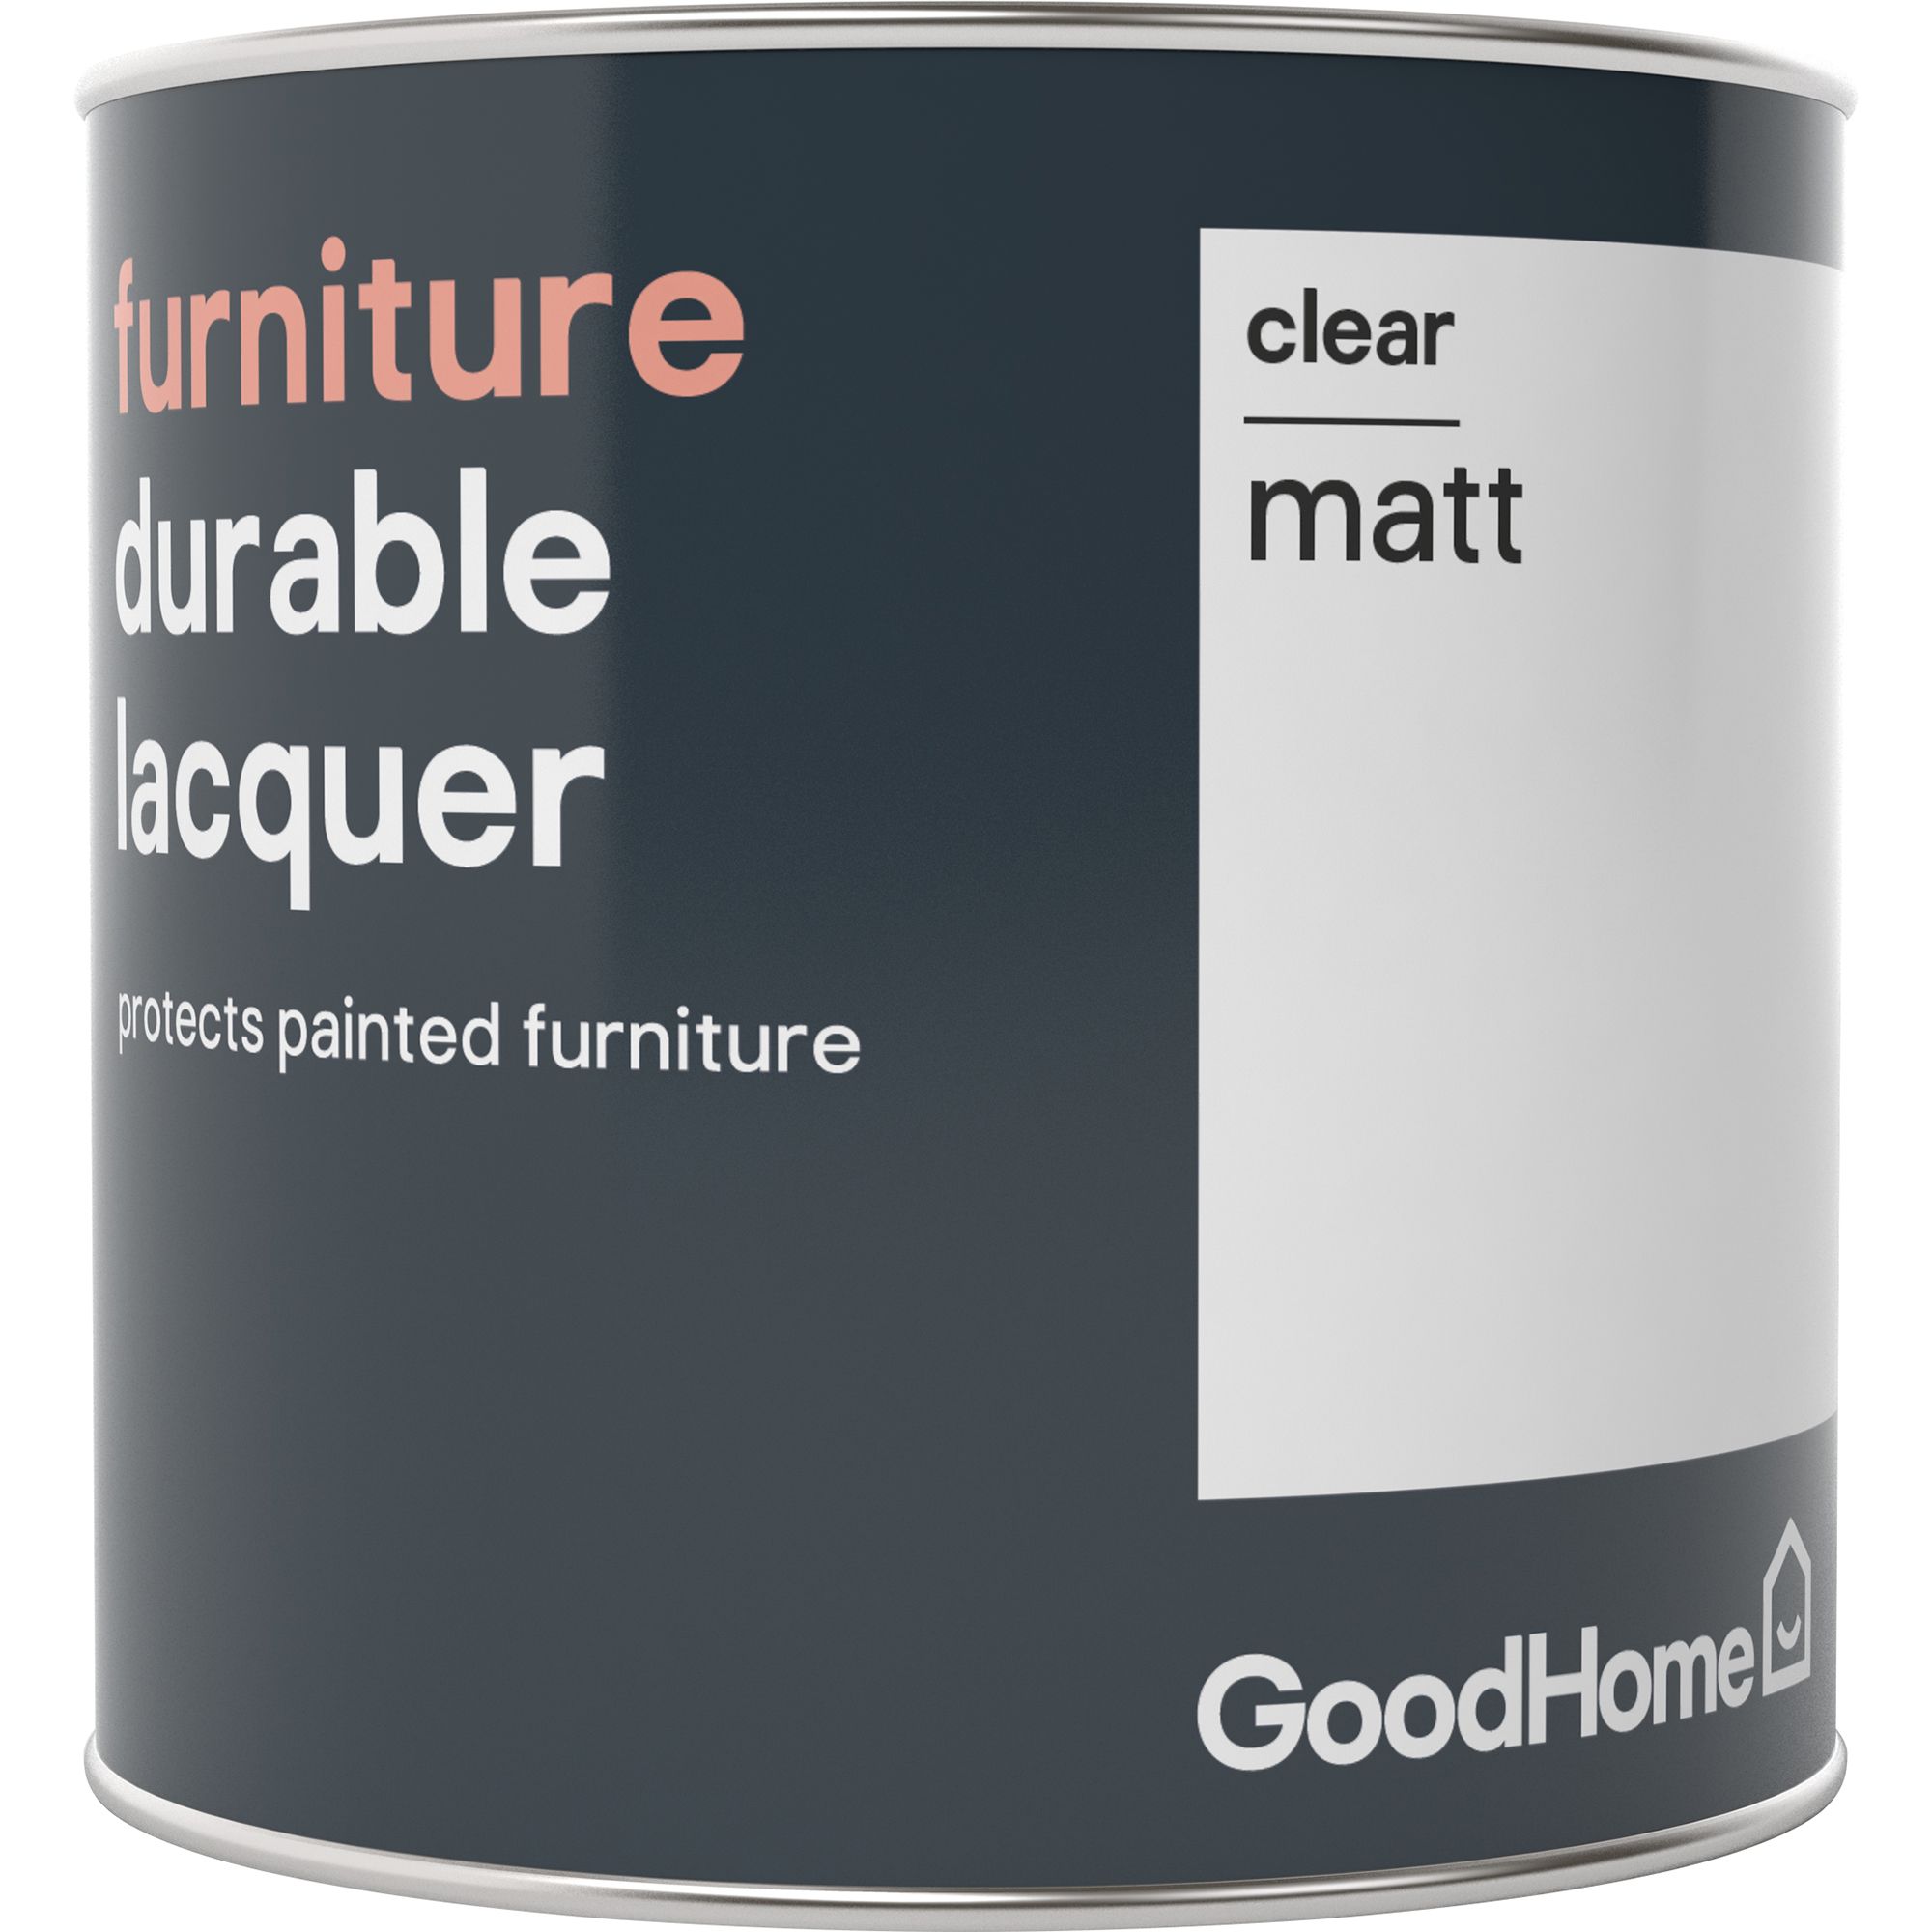 Goodhome Durable Clear Matt Furniture Lacquer 0 5l Diy At B Q